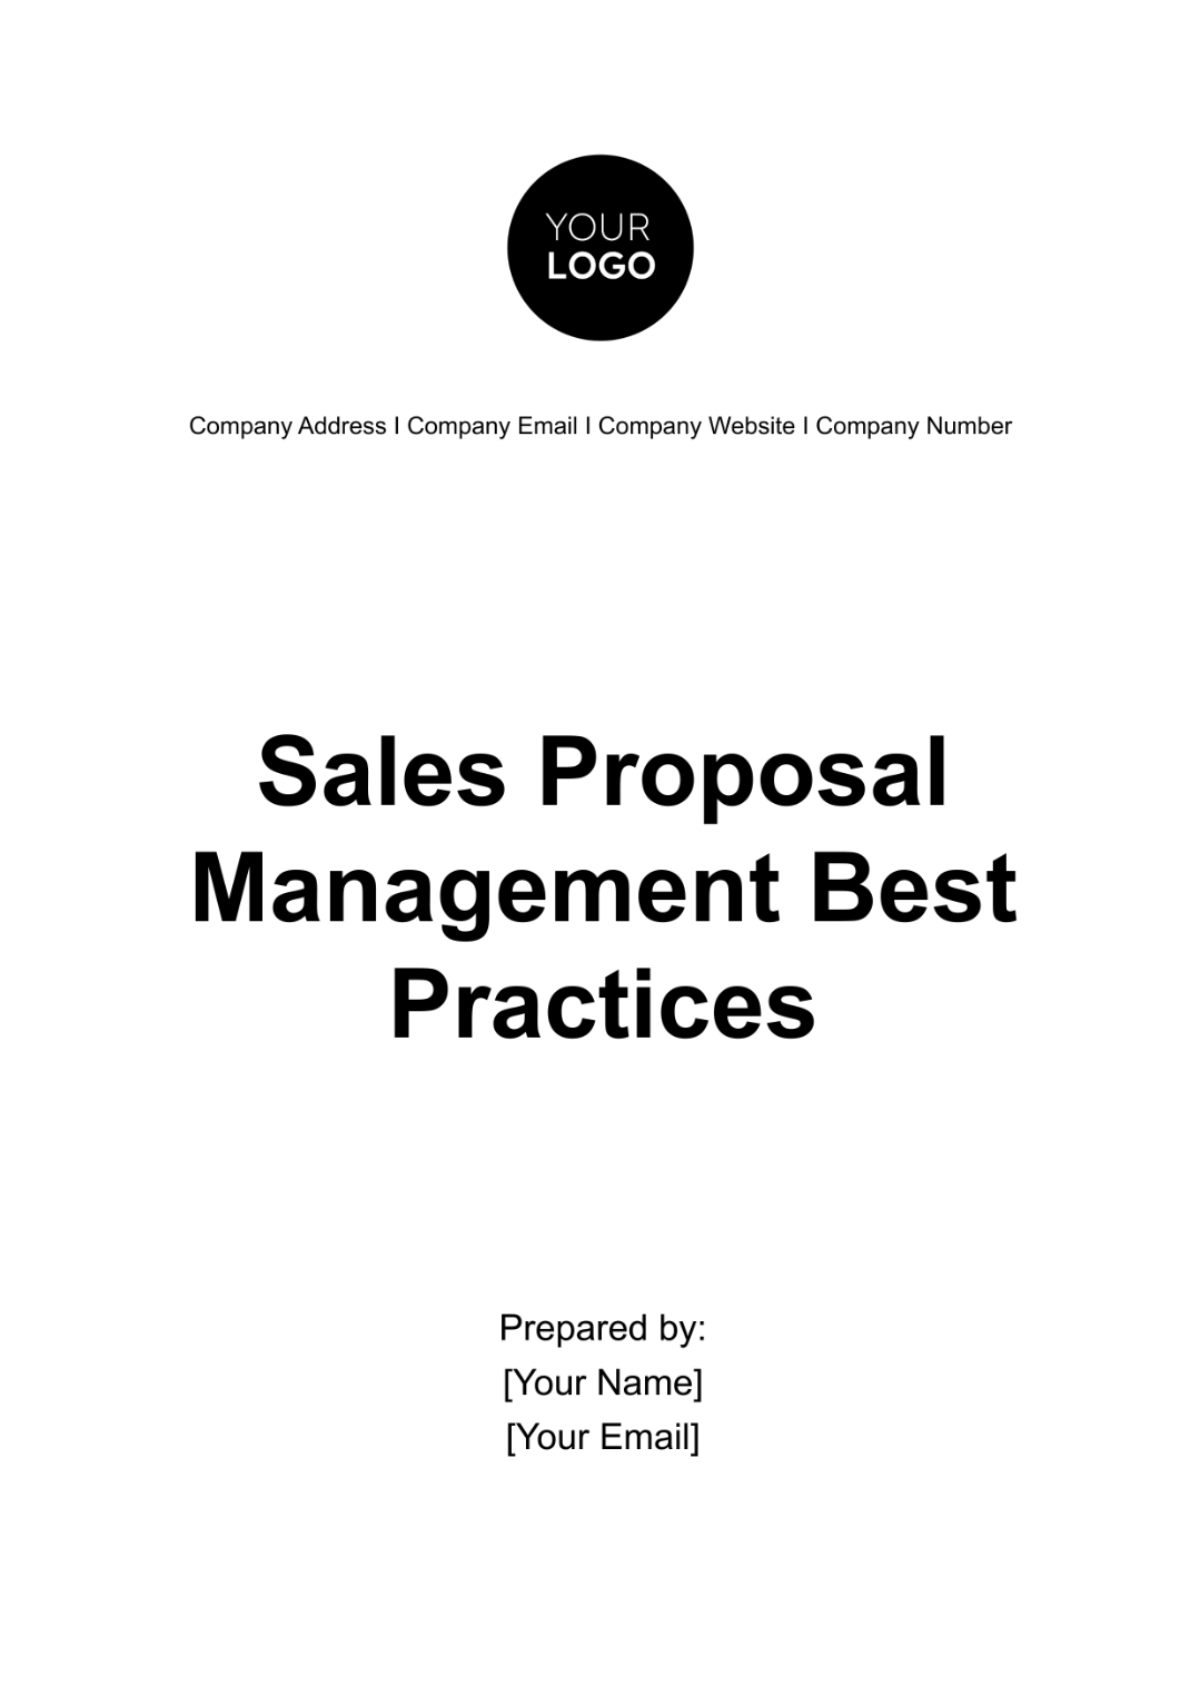 Sales Proposal Management Best Practices Template